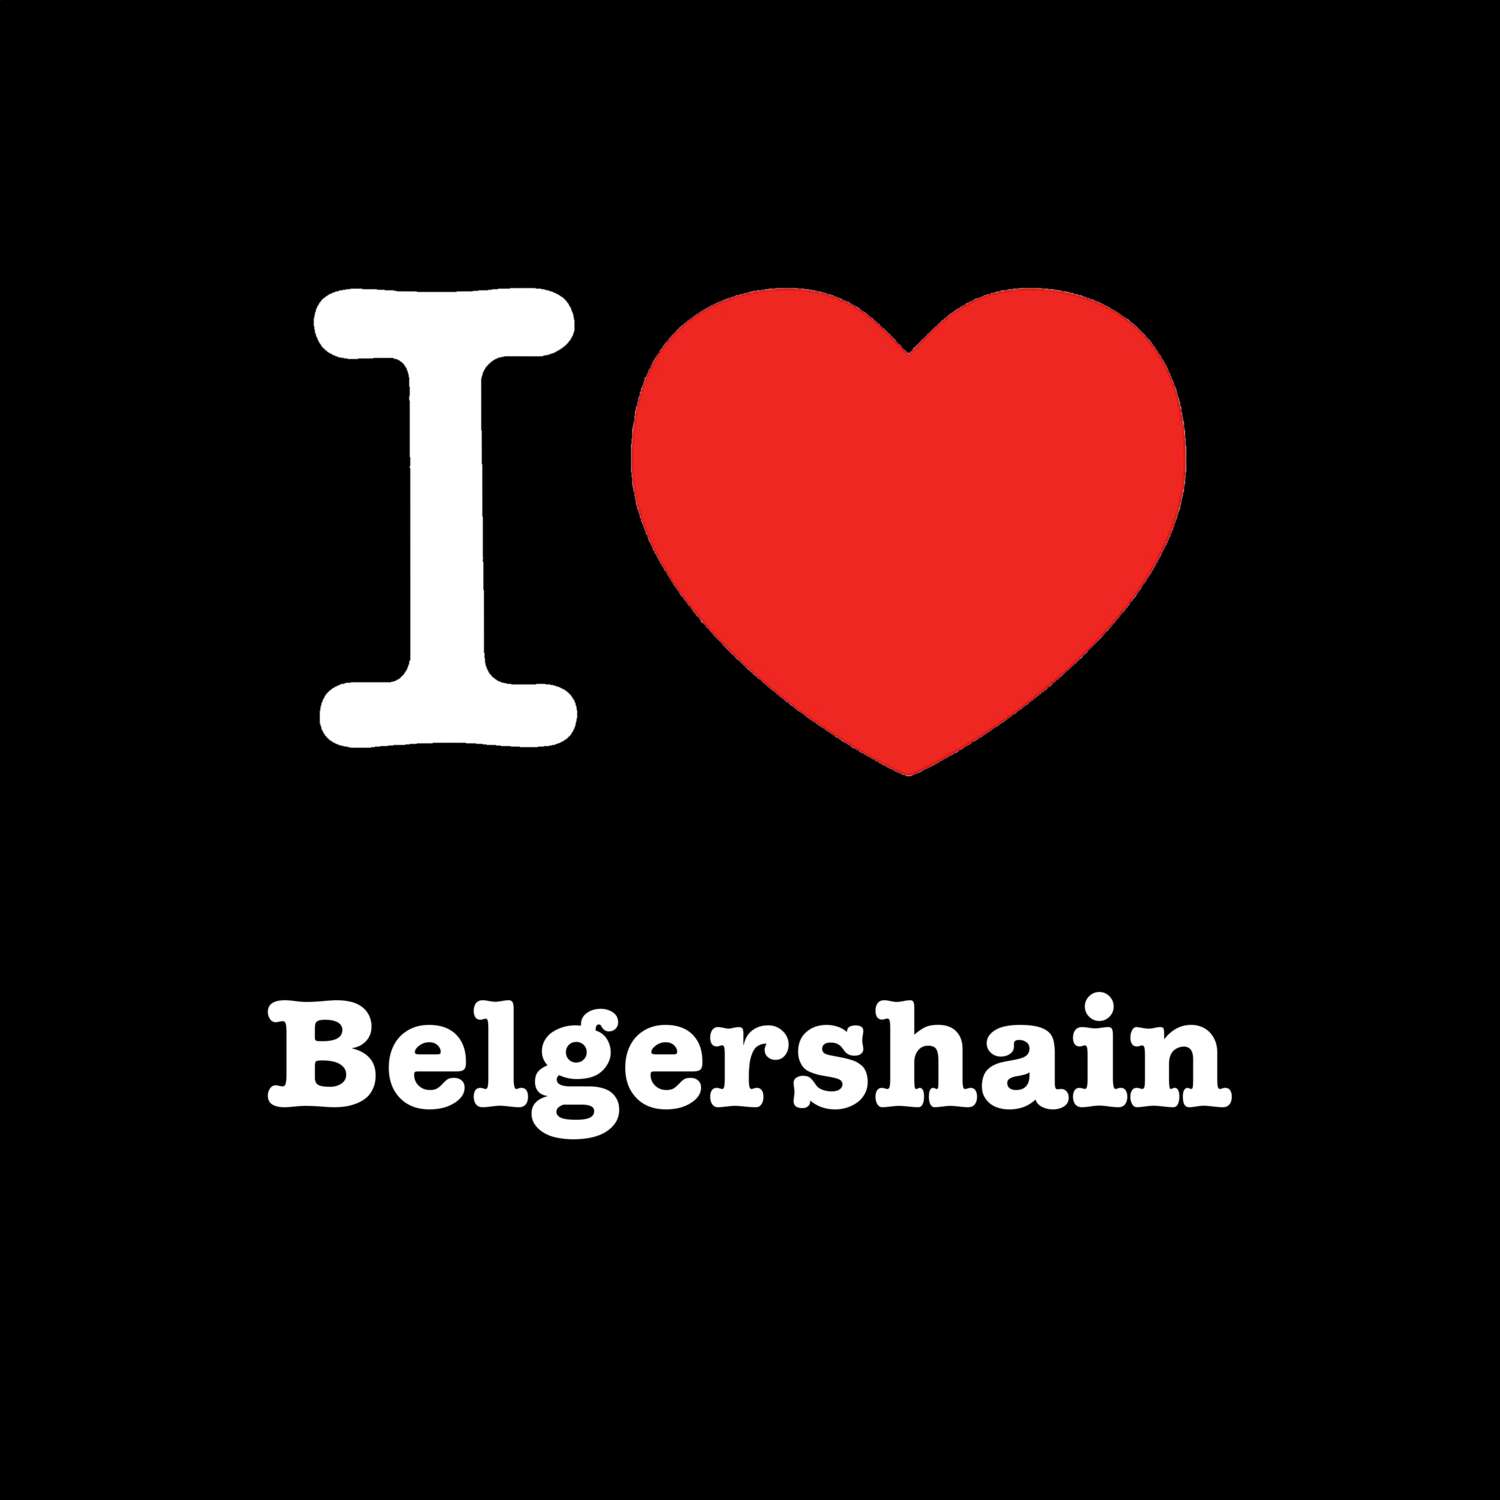 Belgershain T-Shirt »I love«